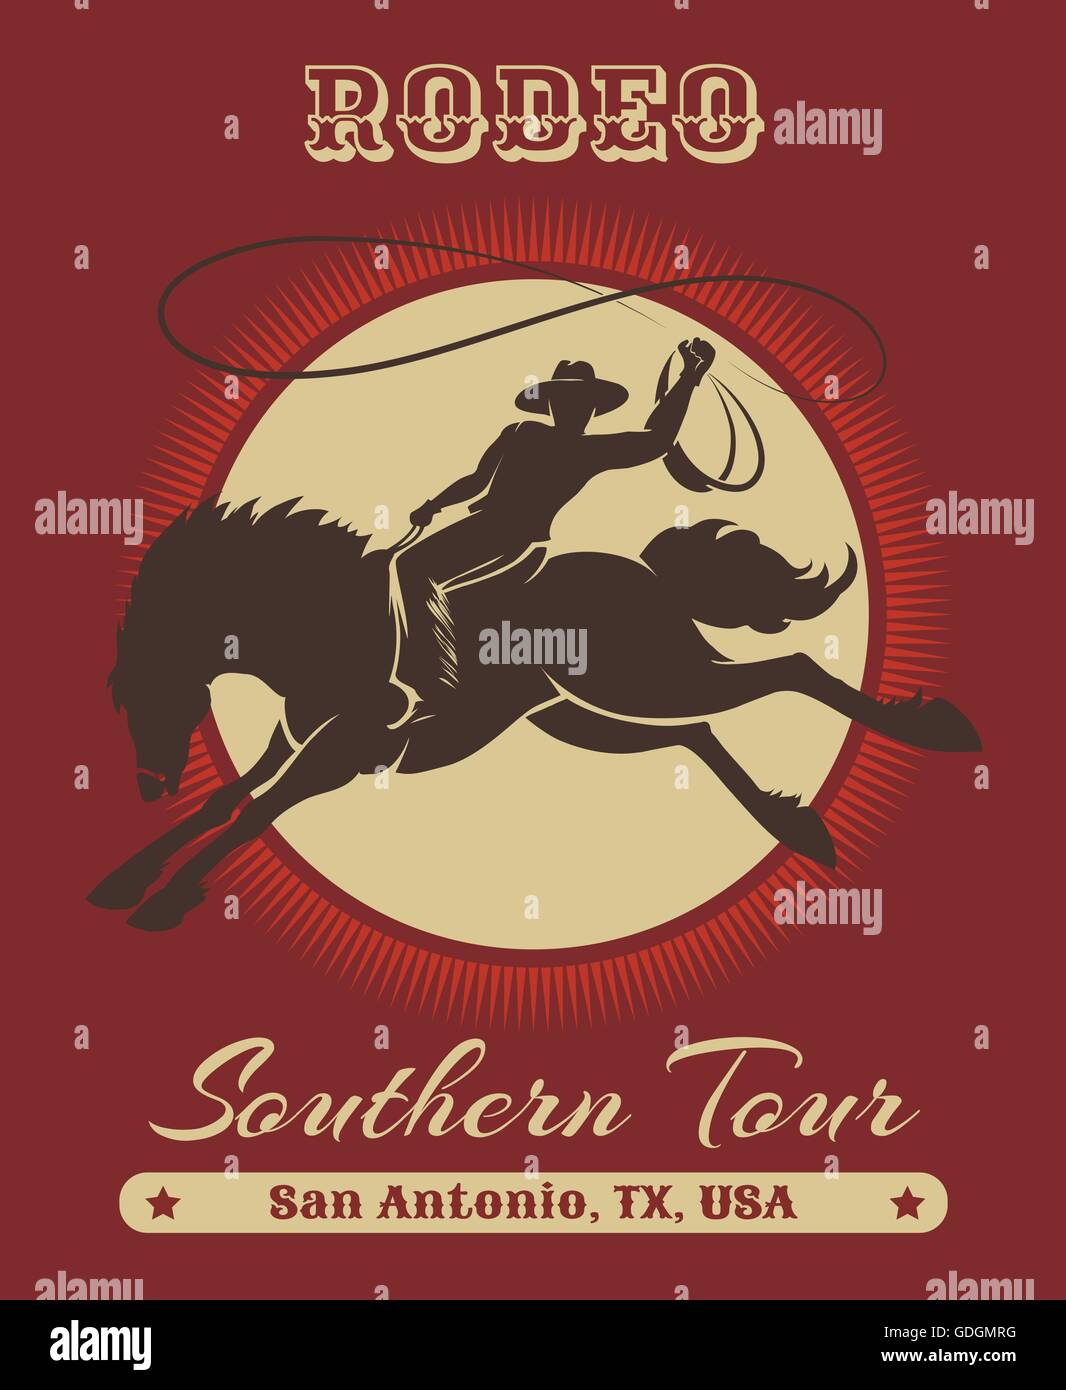 Amerikanischen Texas Cowboy Rodeo Poster mit Retro-Typografie. Kostenlose Schriftart verwendet. Stock Vektor